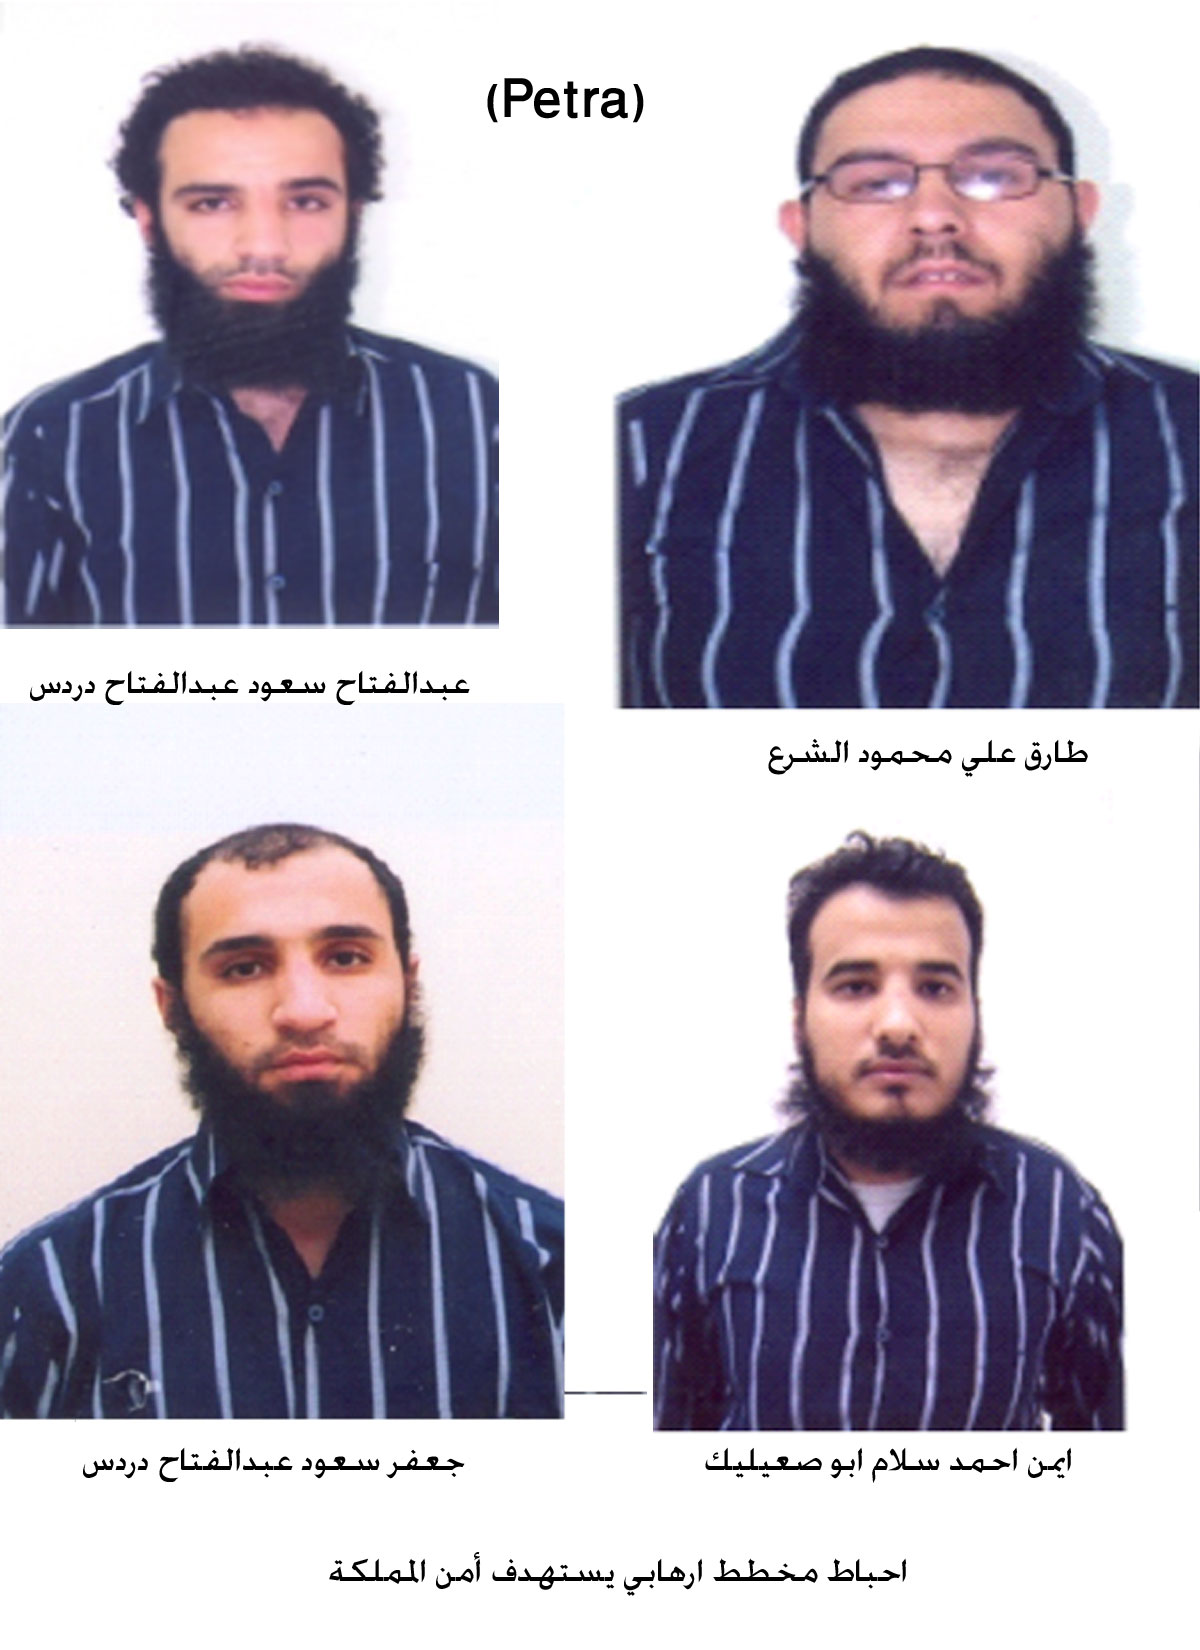 اعتقال 11 ارهابي يستهدفون أمن المملكة الاردنيه.. صور..؟؟  Image